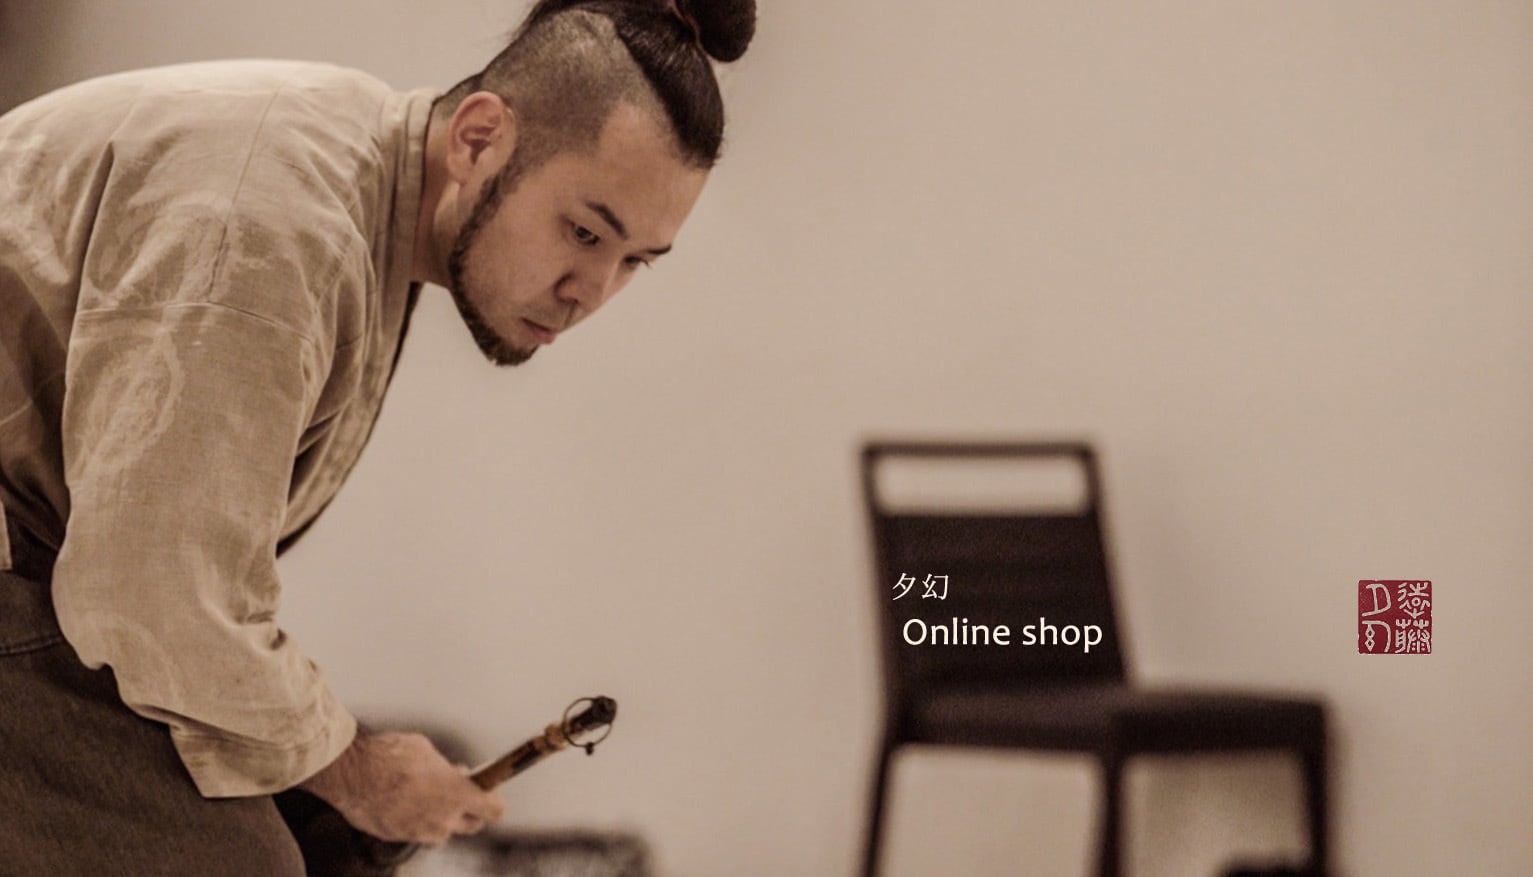 夕幻 Online shop